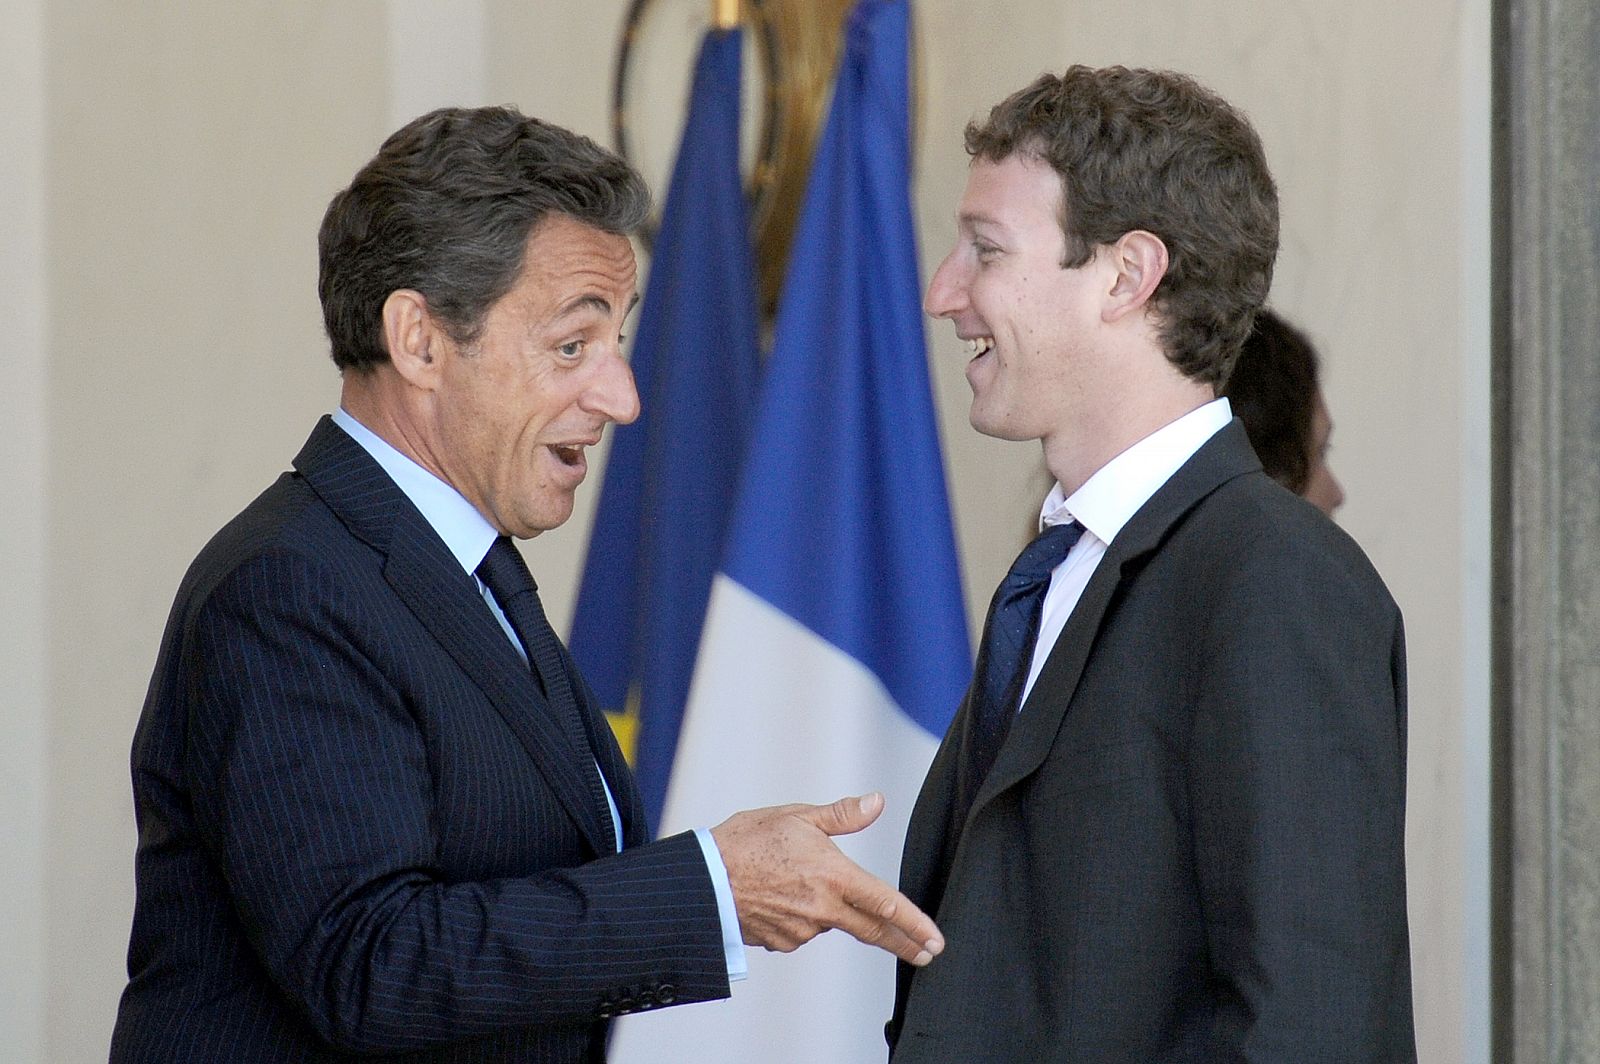 El fundador de Facebook, Mark Zuckerberg, a su llegada al encuentro con el presidente francés, Nicolas Sarkozy en el marco de la cumbre del 'G8 de internet'.